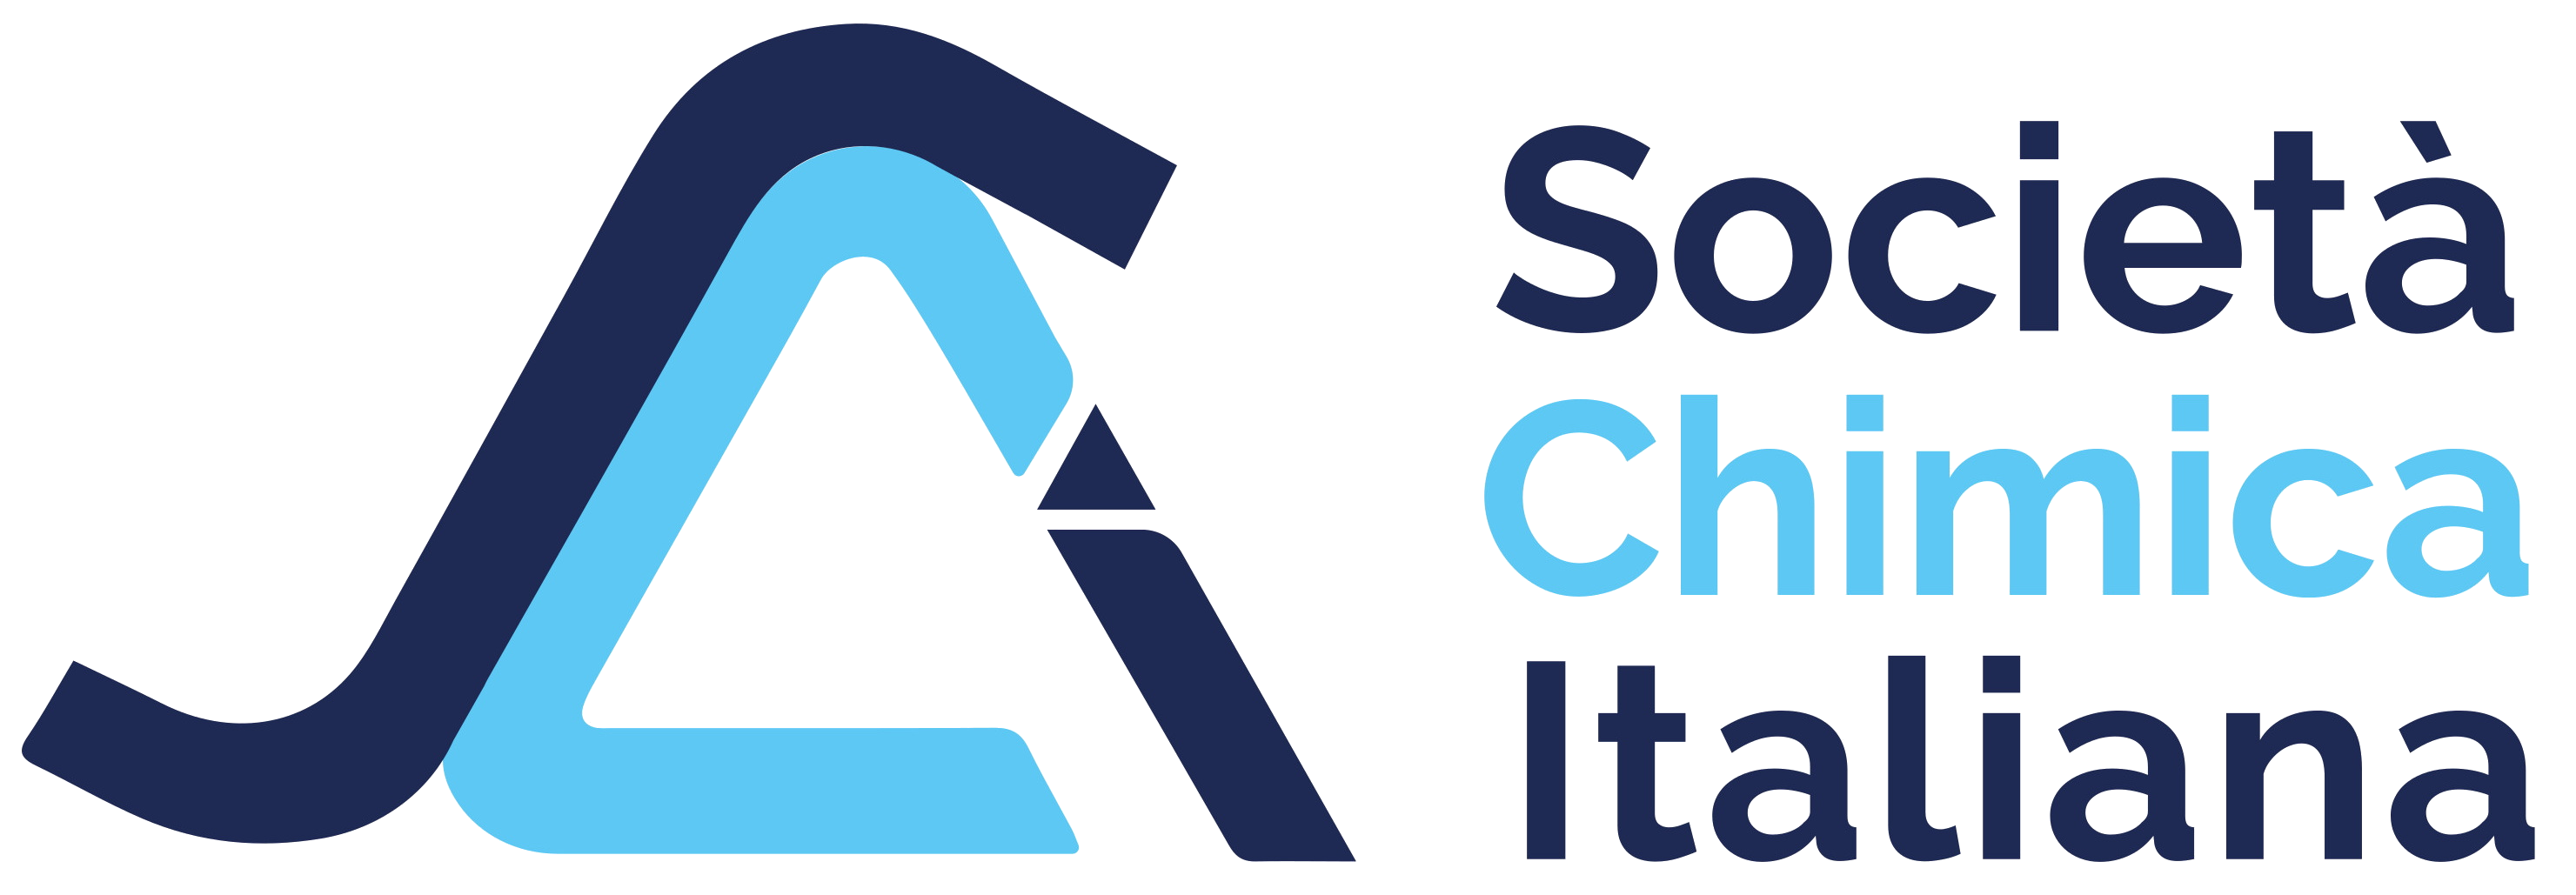 Logo SCI sfondo trasparente 01 003